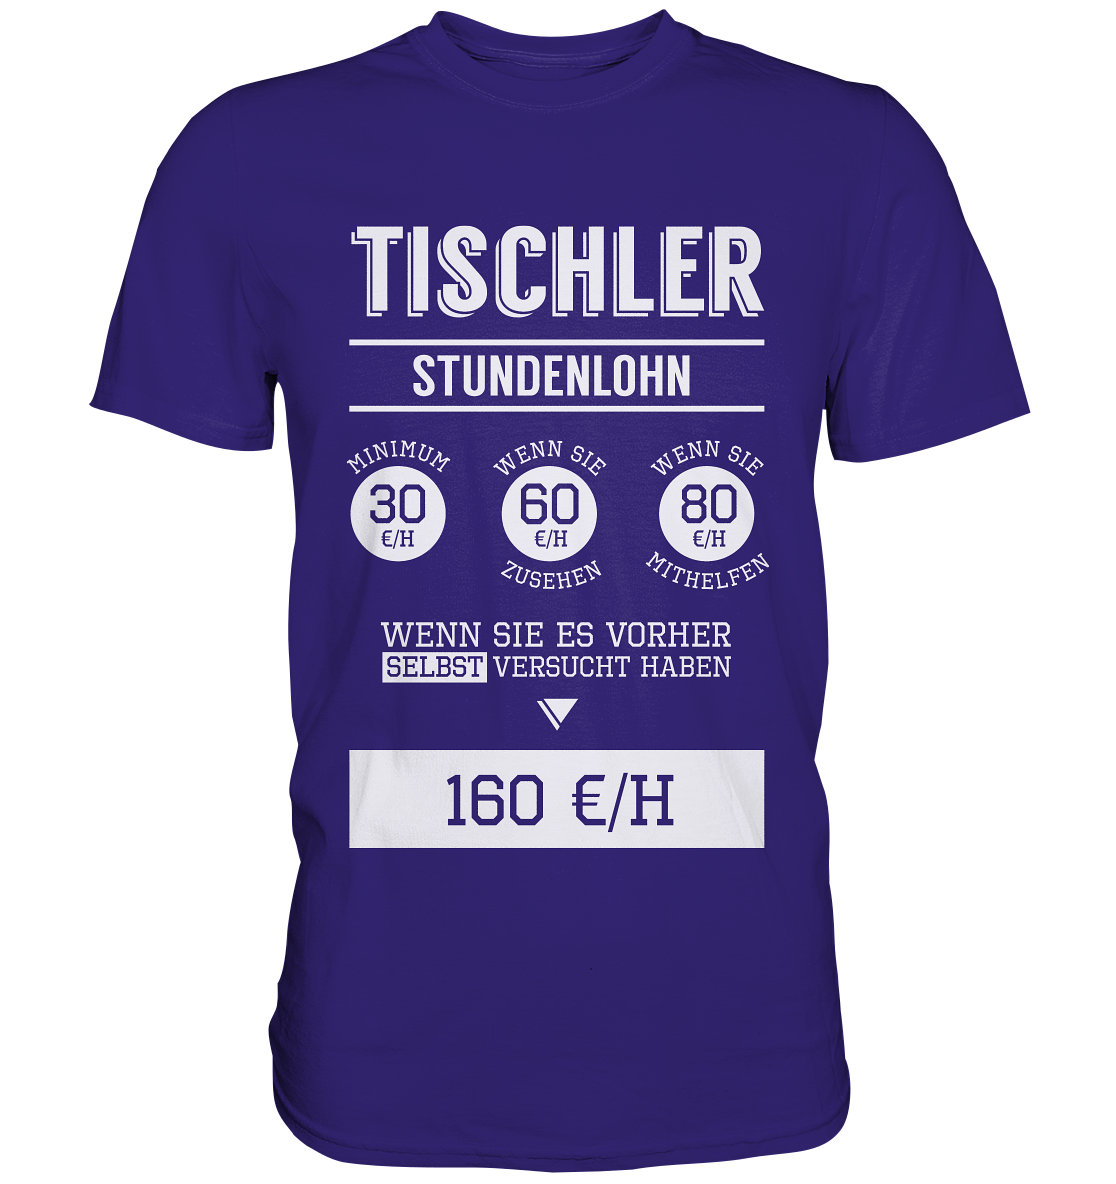 Tischler Stundenlohn / Druck weiß / Männer Premium Shirt - Baufun Shop